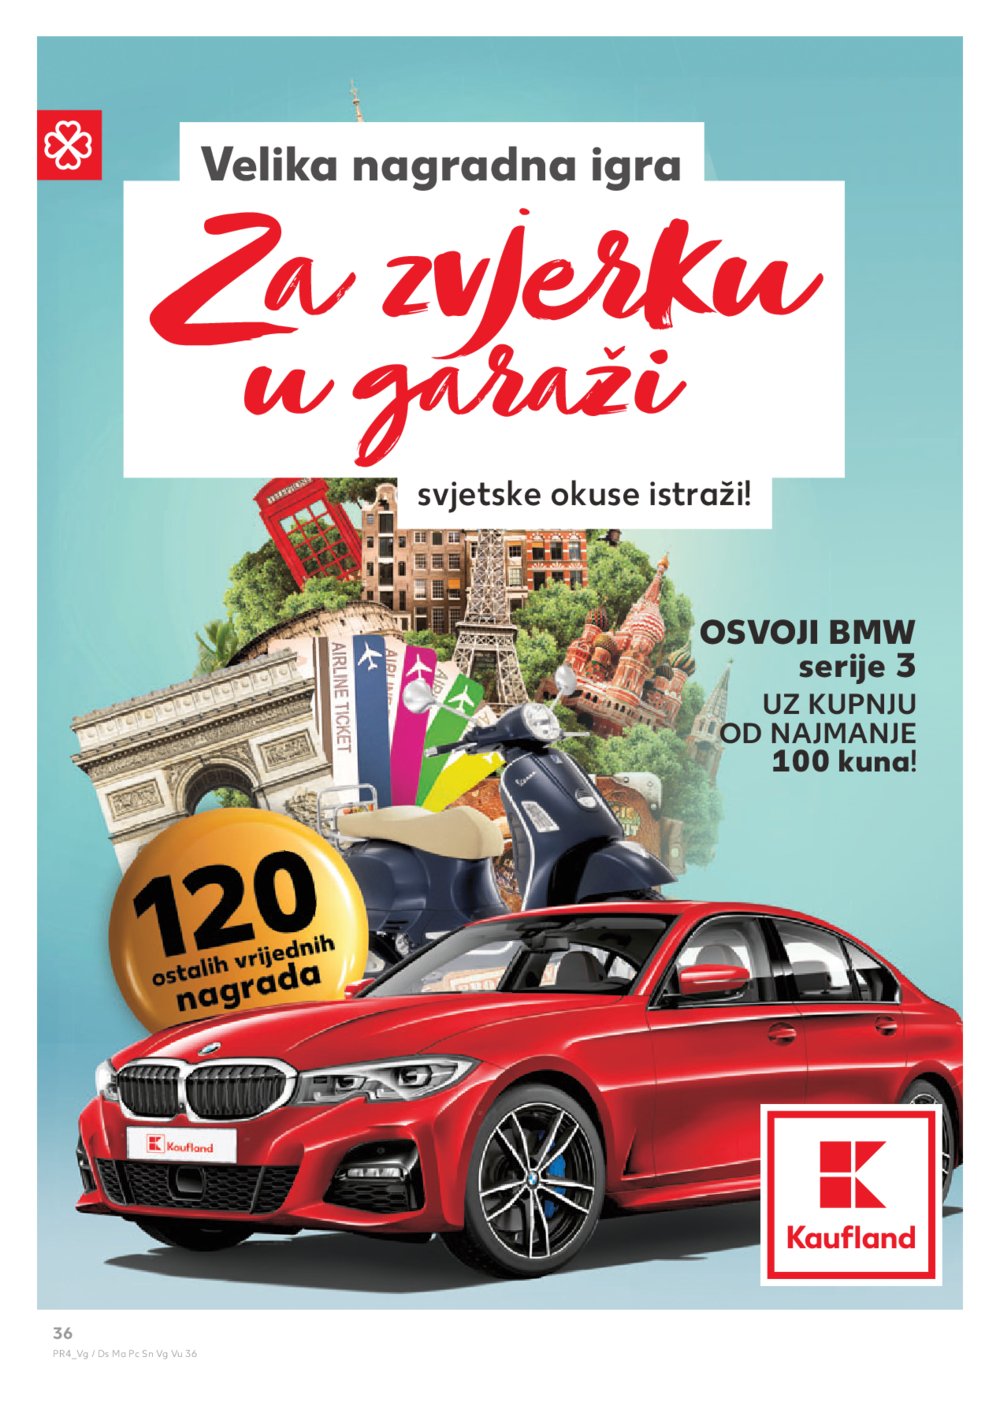 Kaufland katalog Akcija 14.08.-21.08.2019. DS, Sinj, VG,VU